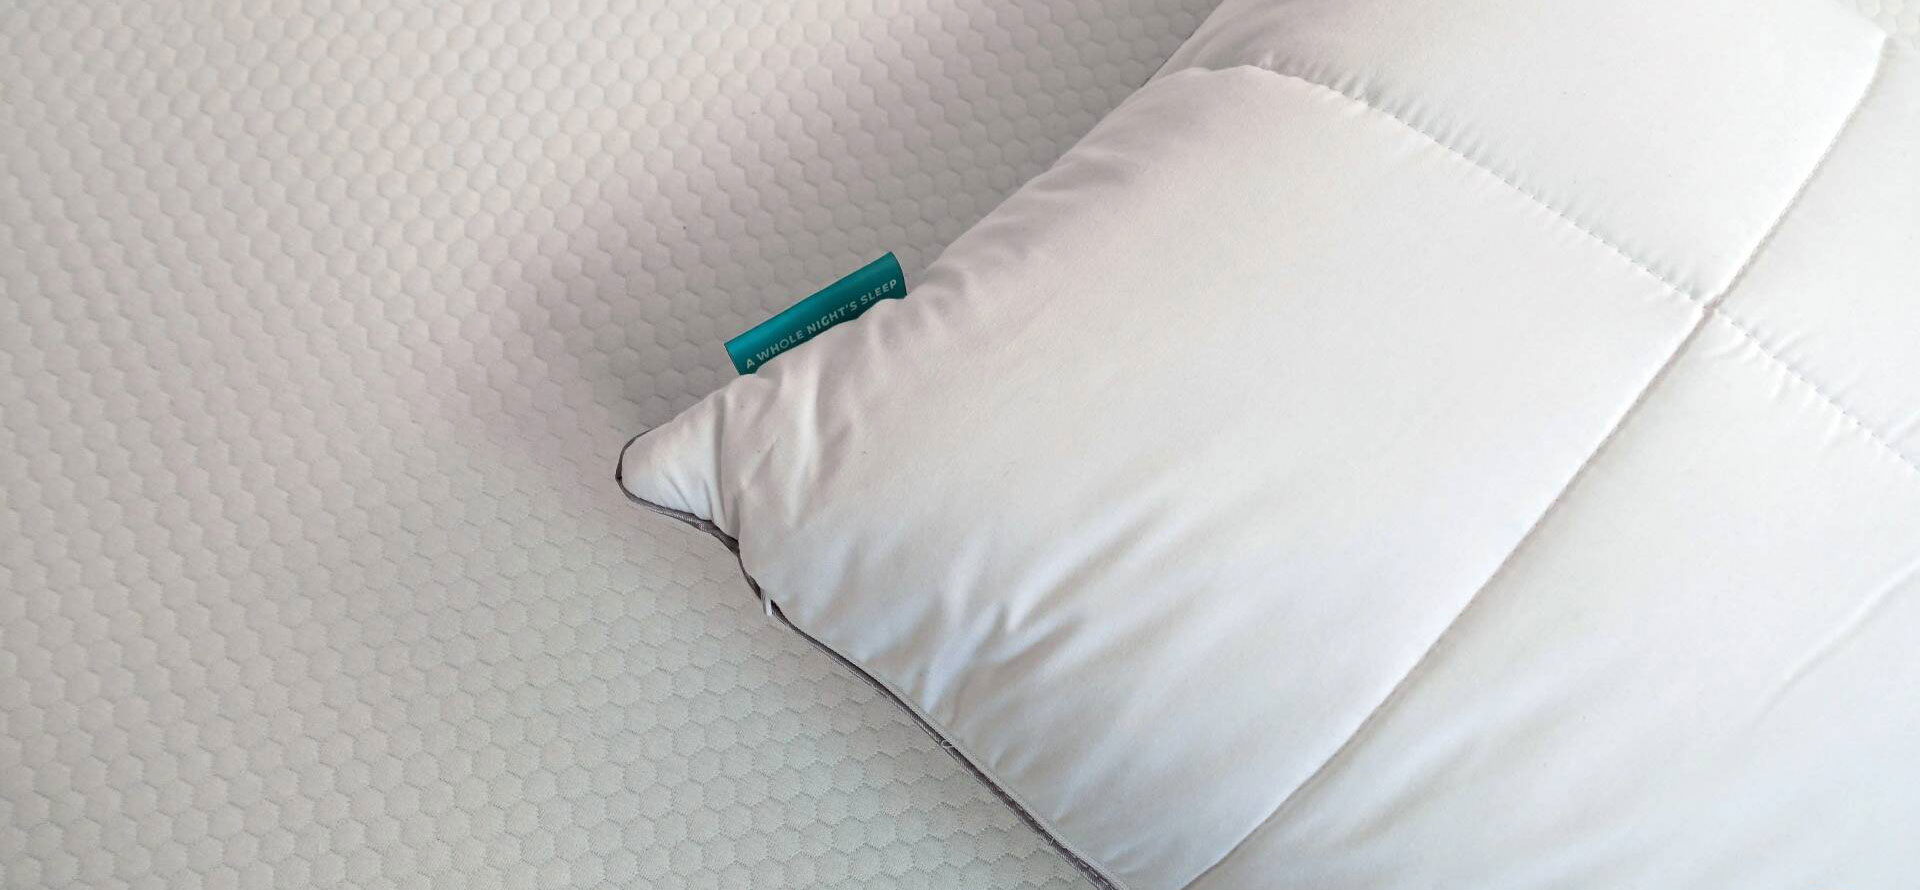 Nectar pillow on mattress.